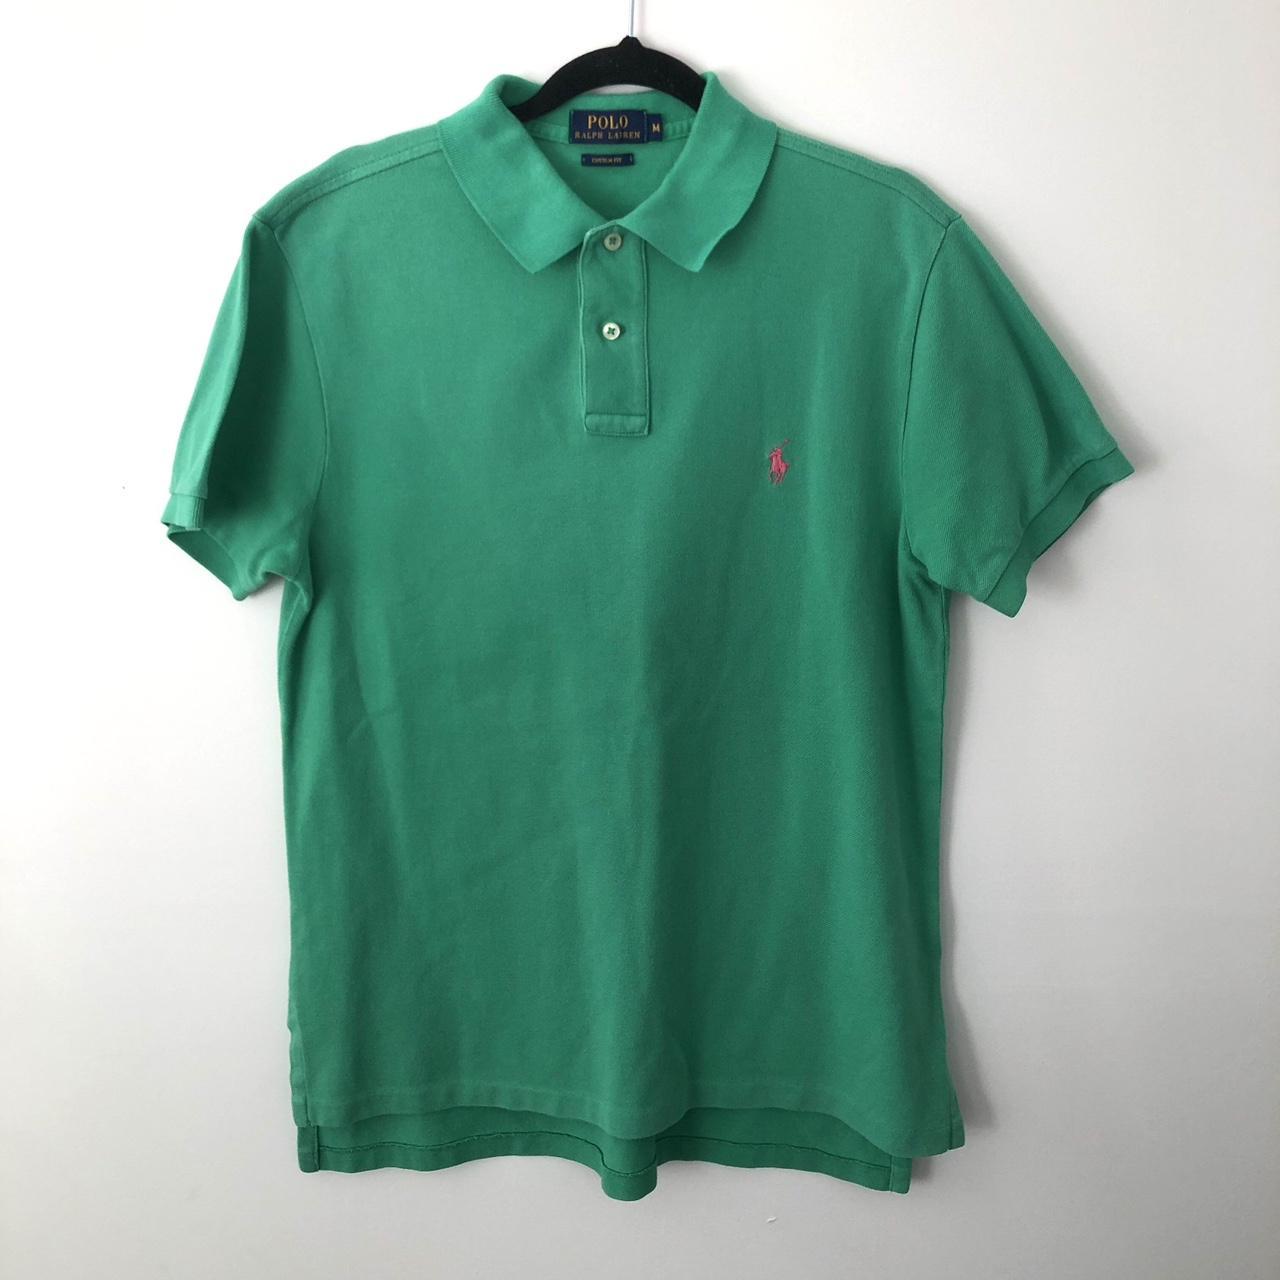 🌿 Polo Ralph Lauren Green Shirt 👕 Size:... - Depop